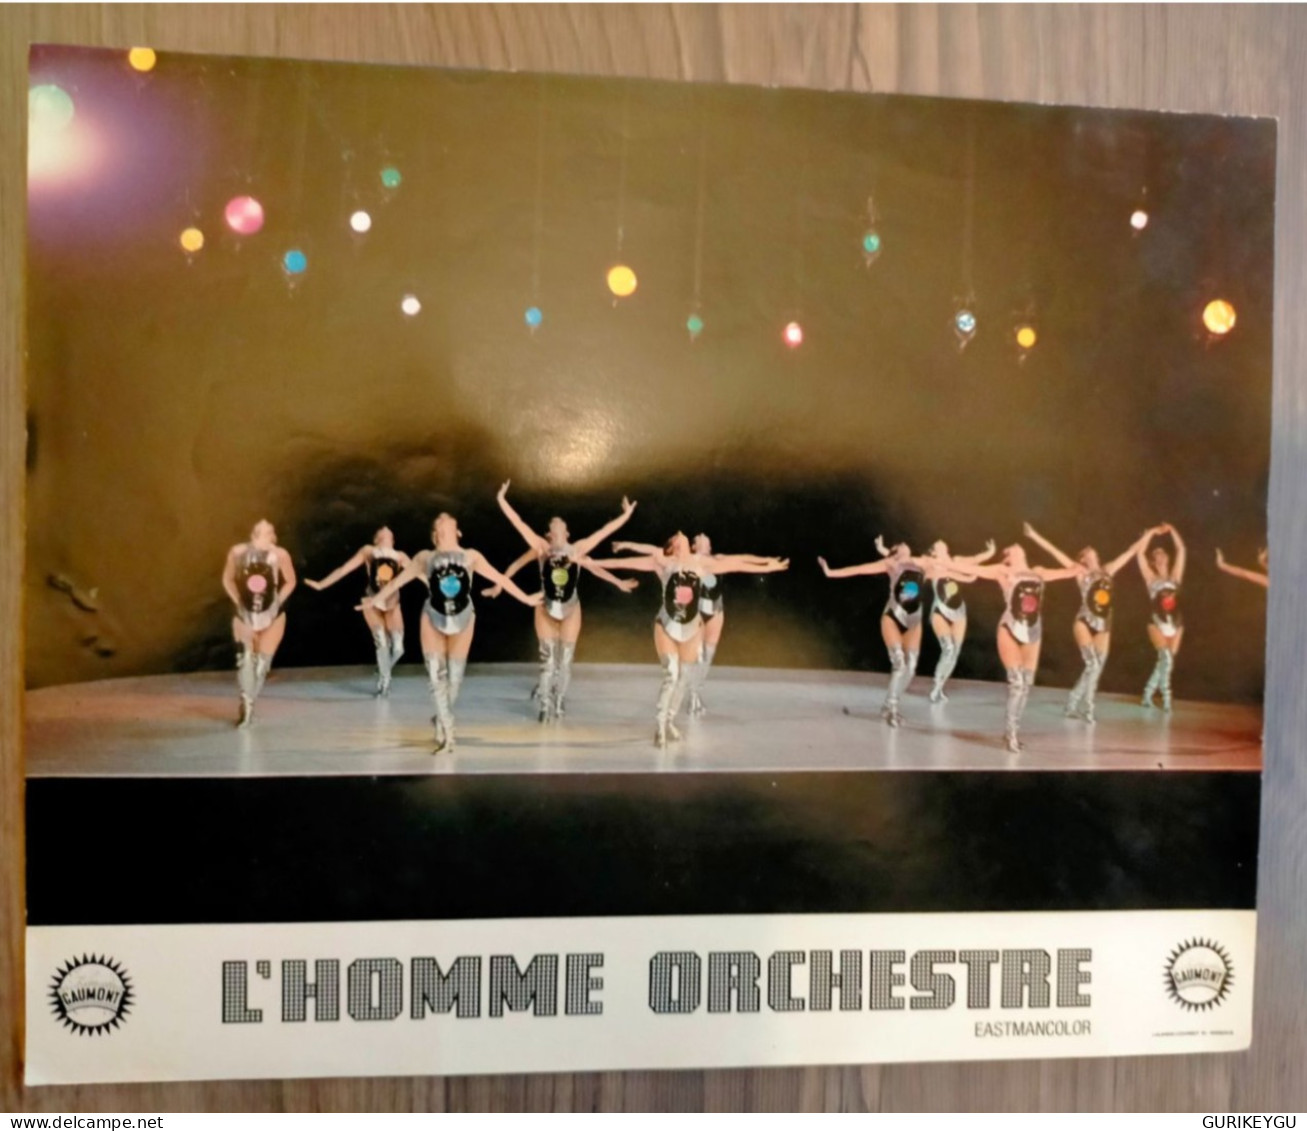 LOUIS DE FUNES Photo Film D'exploitation L'homme Orchestre 28X22cm GAUMONT Eastmancolor - Other Formats